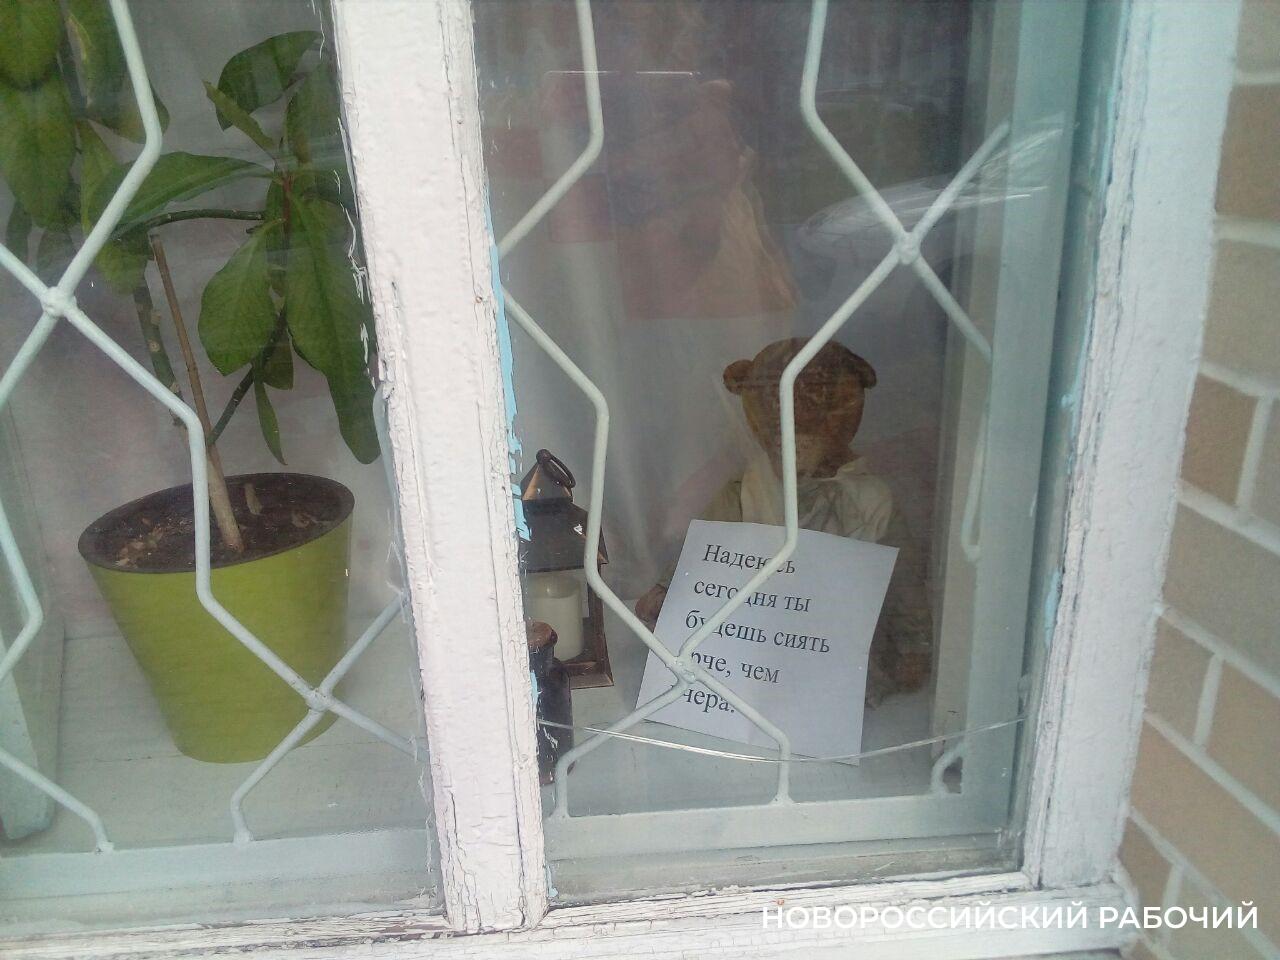 «Пусть всё у тебя получится, человек!» В Новороссийске в окне дома каждый день появляются надписи, от которых тепло и радостно